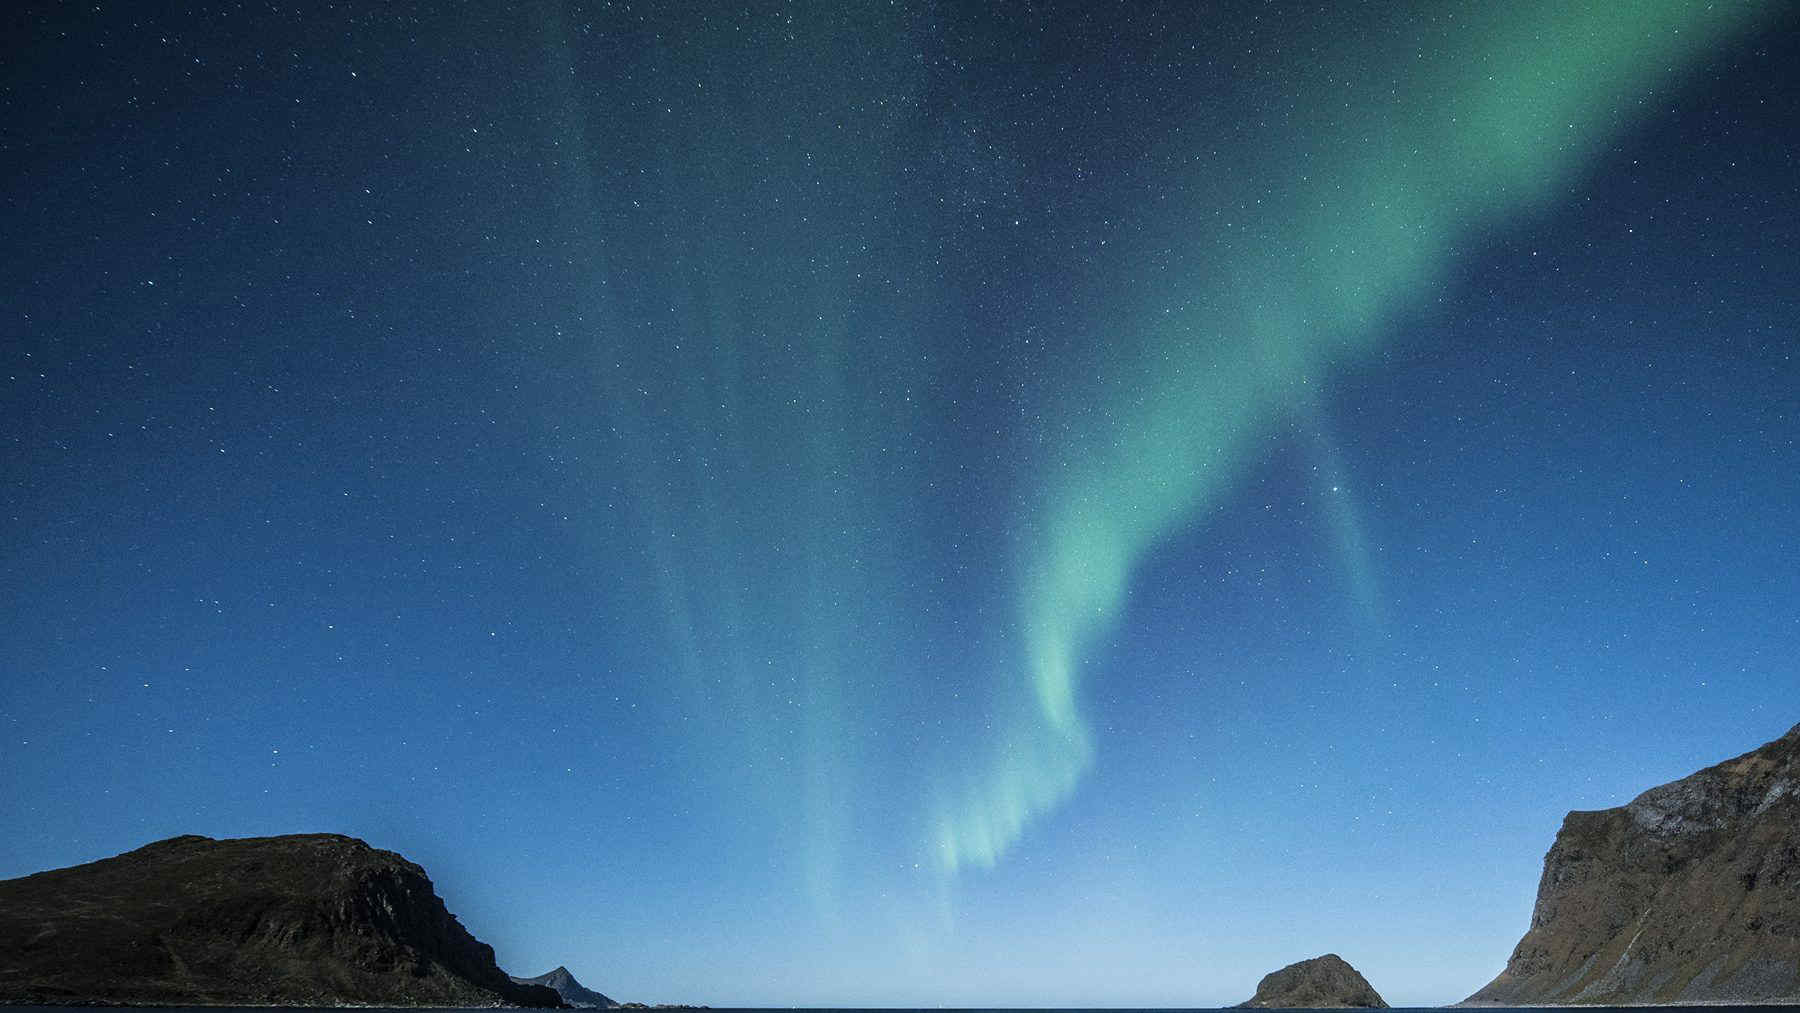 Filamento magnetico esploso sul Sole: possibili aurore polari e disturbi geomagnetici il 18 novembre